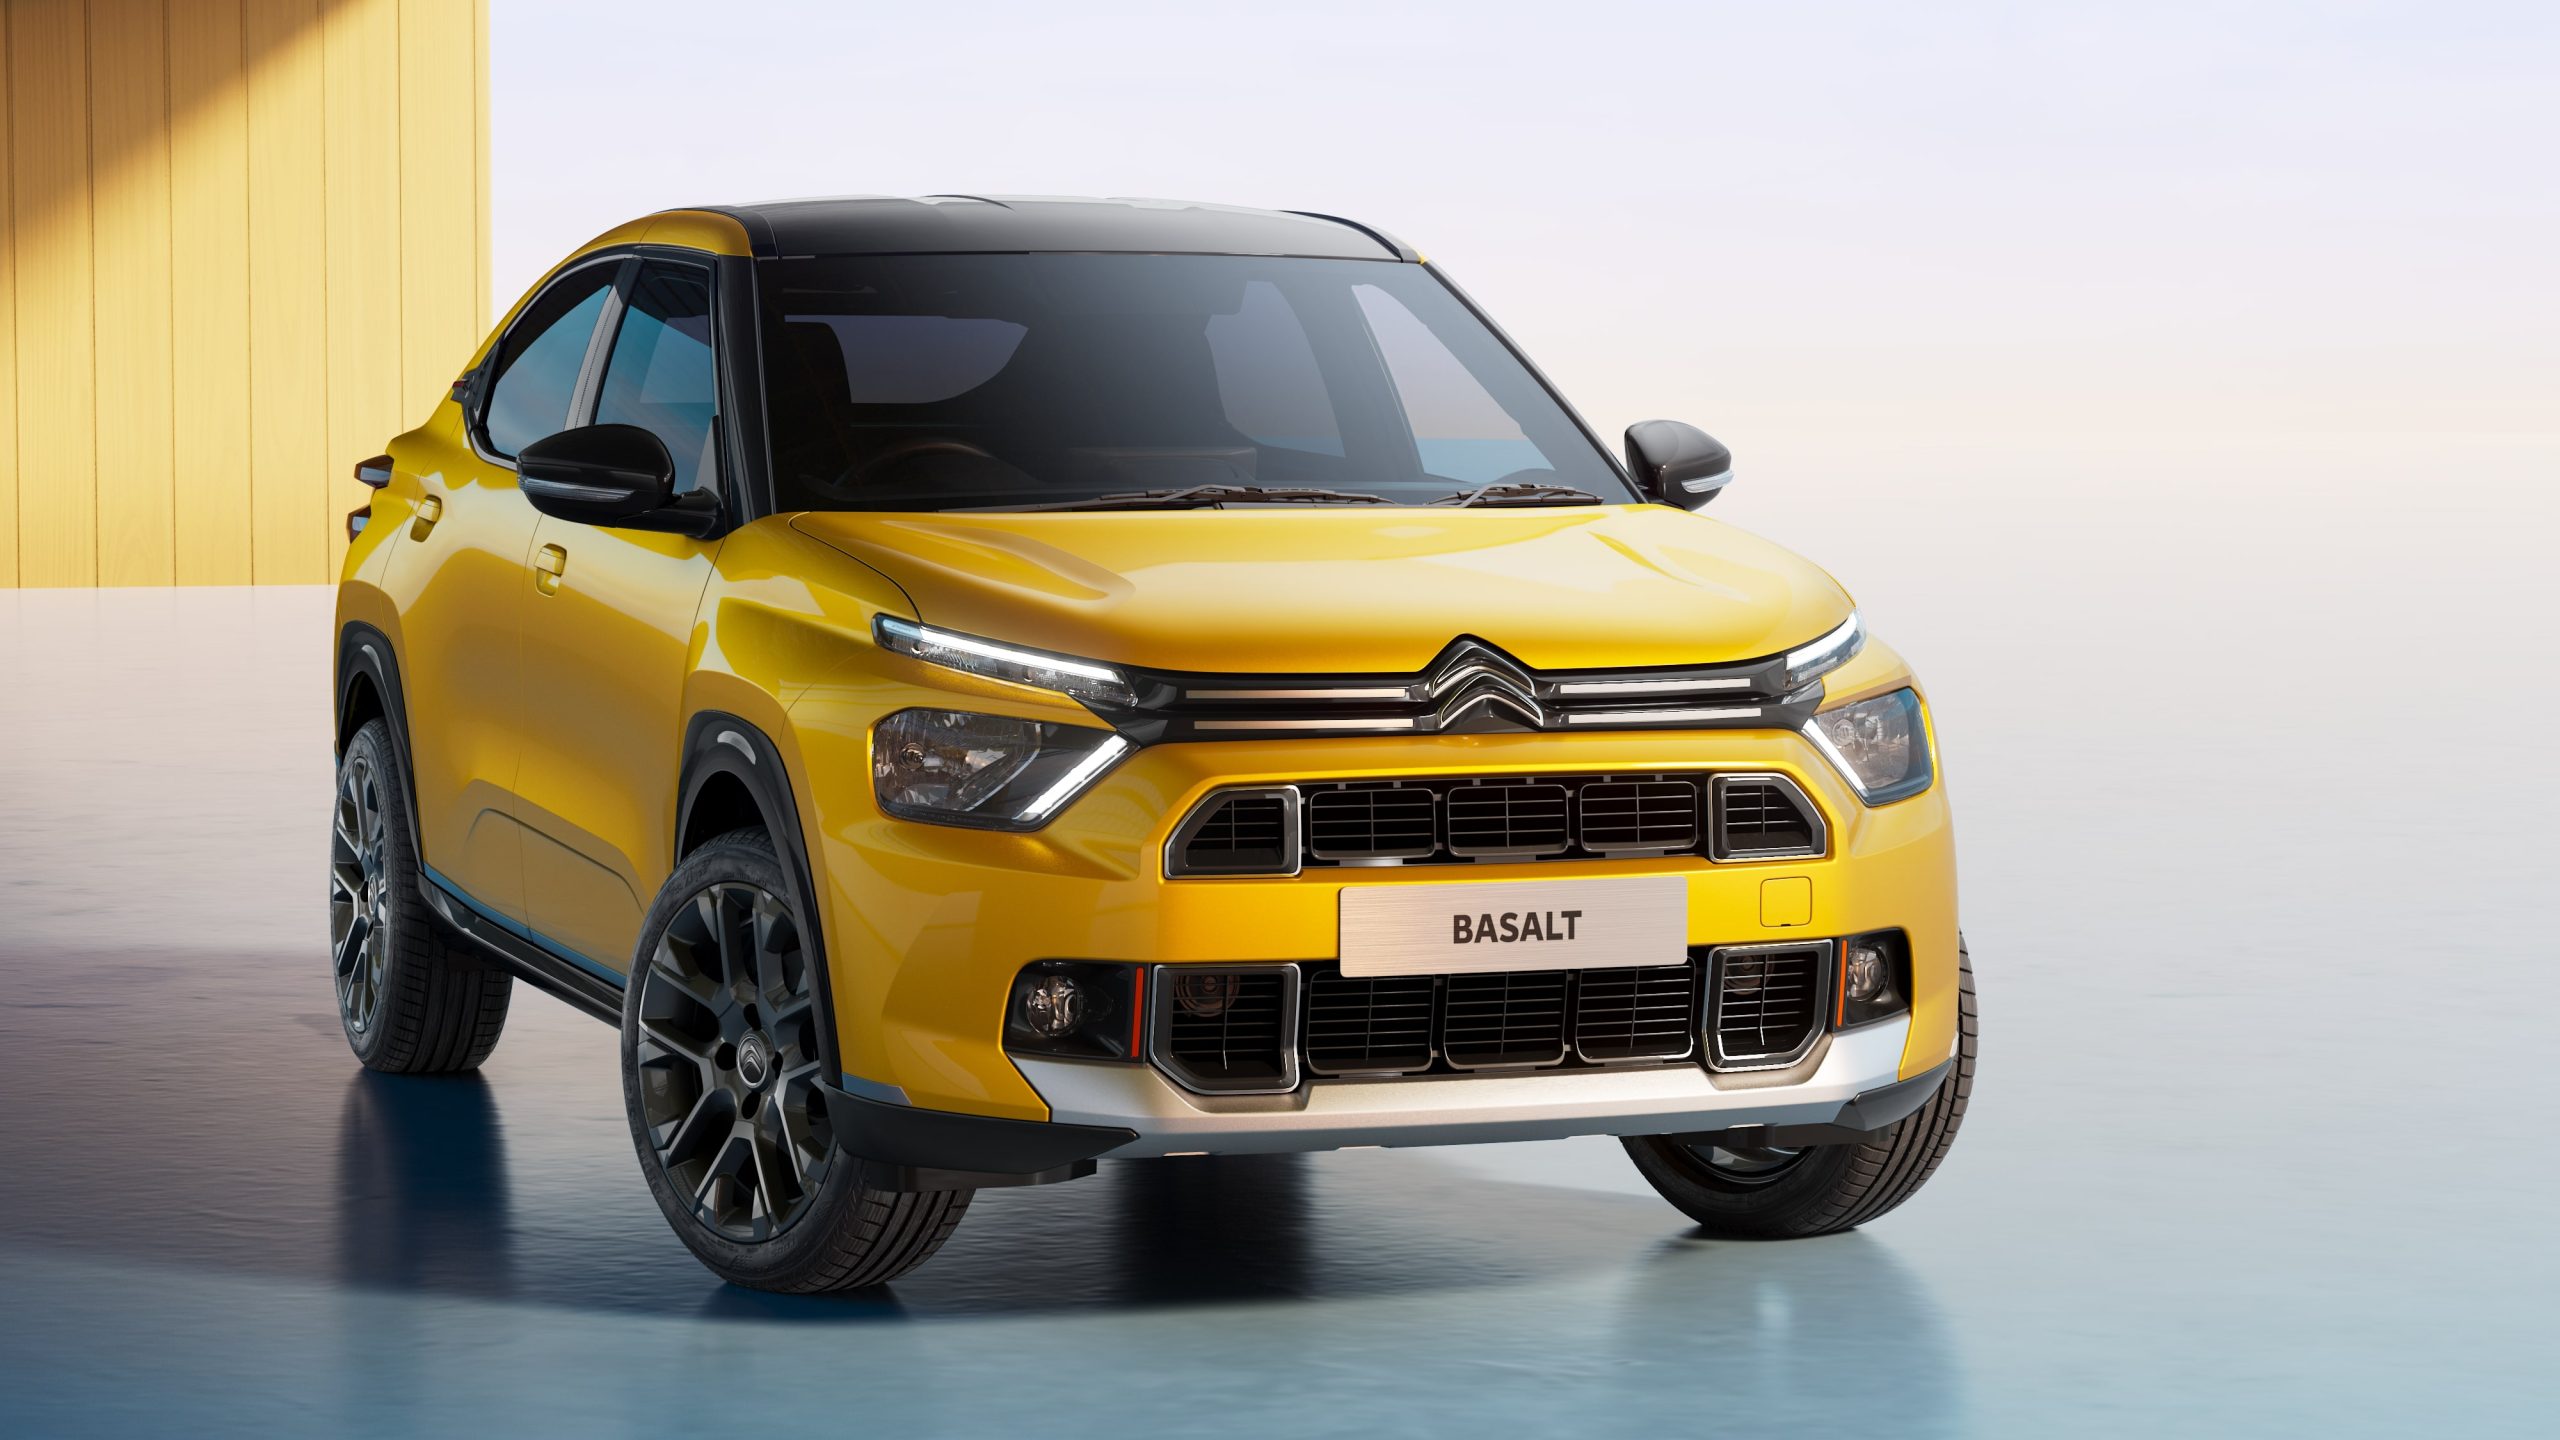 Citroën Basalt chega para ser o coupè mais bonito do Brasil